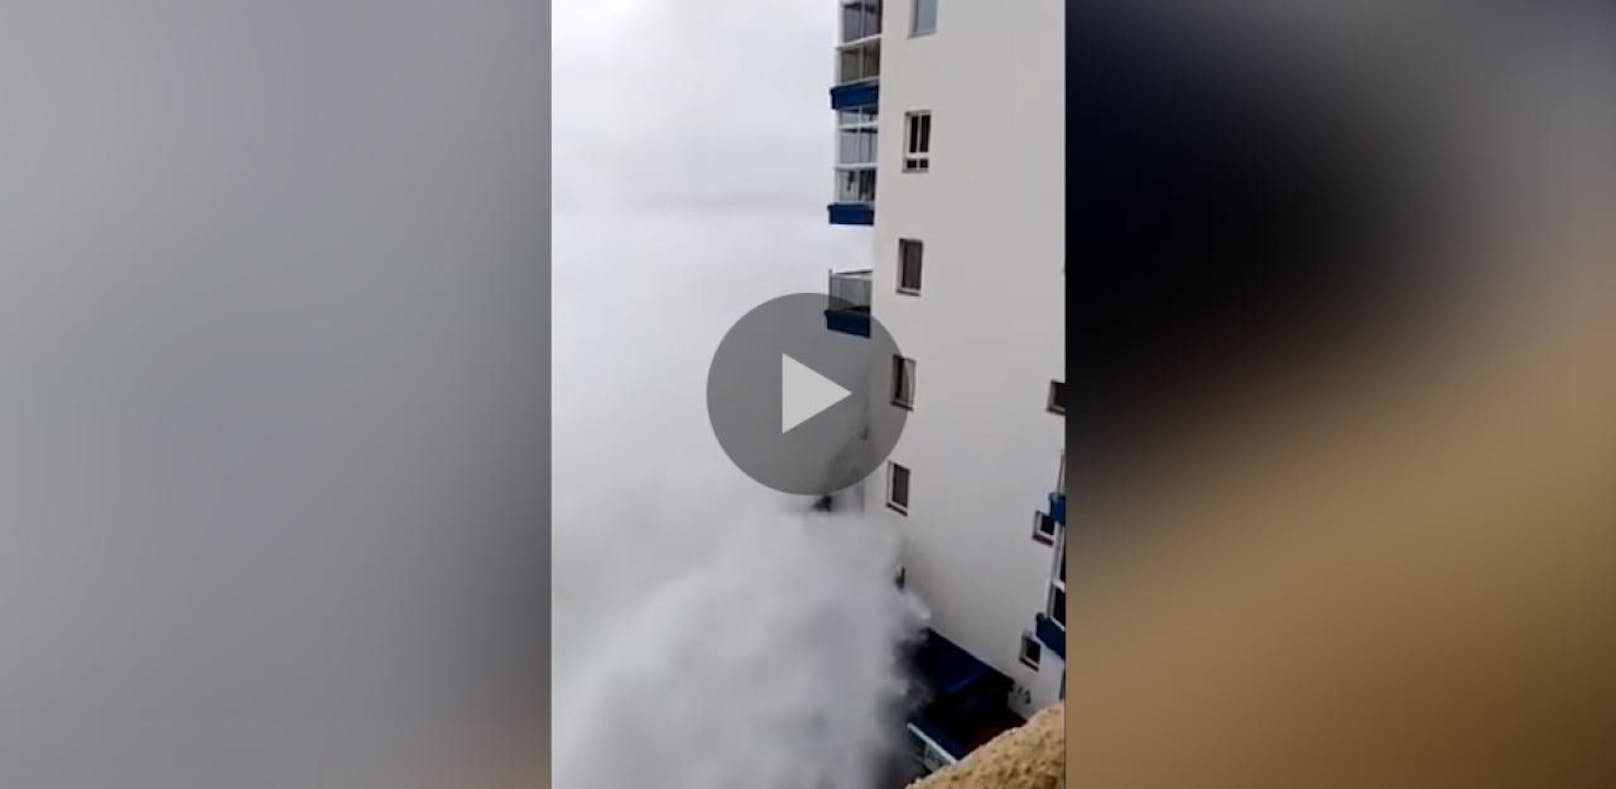 Riesen-Welle zerstört Balkone auf Teneriffa